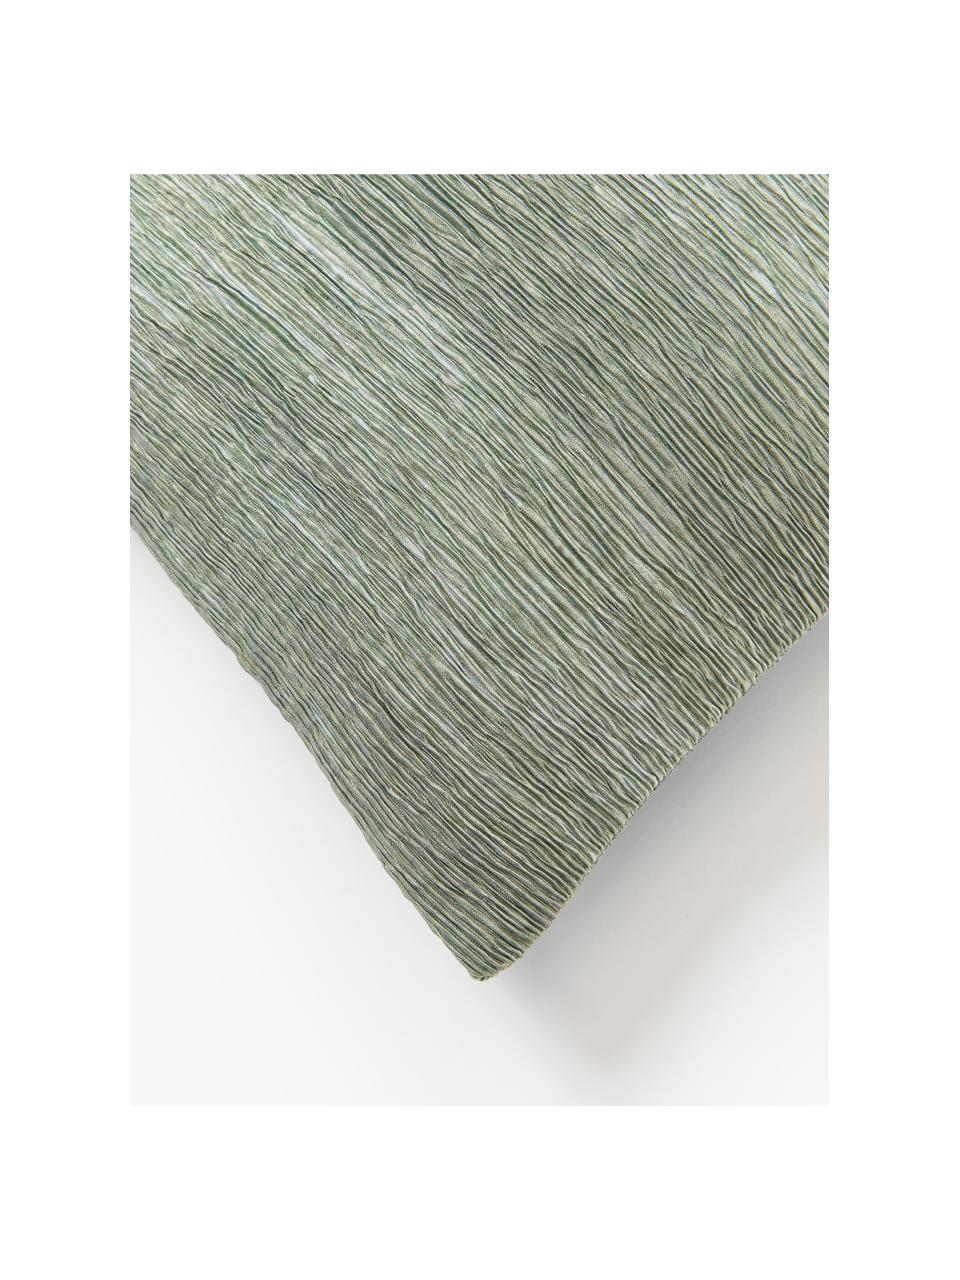 Kussenhoes Aline met gestructureerde oppervlak, 100% polyester, Lichtgroen, B 40 x L 40 cm